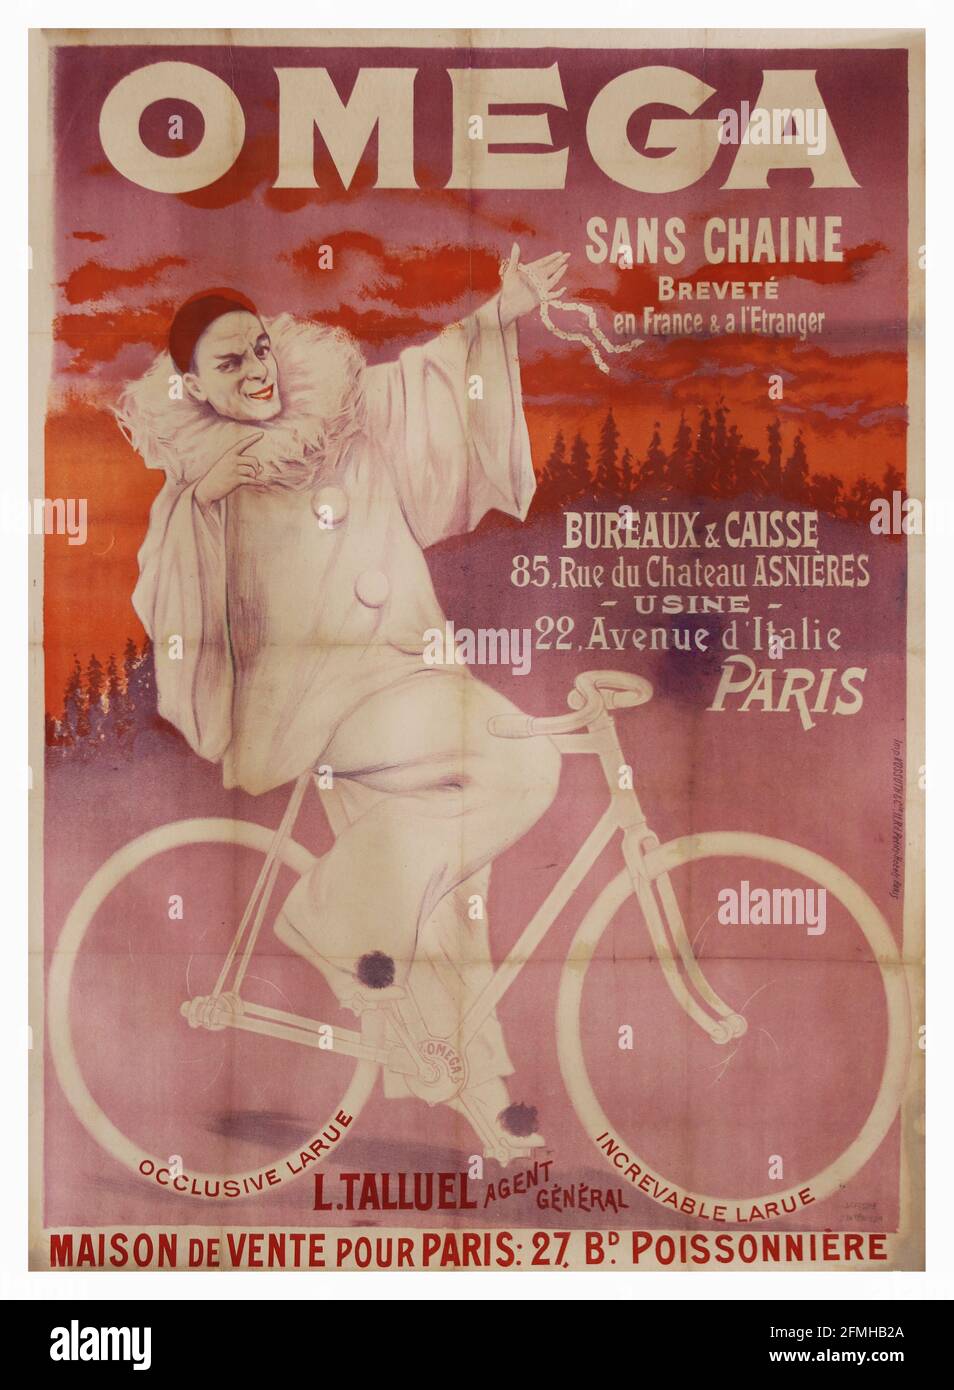 Omega – Sans Chaine. Oficinas y Caisse. 22 Avenue d'Italie París. Cartel publicitario de bicicletas. Antiguo y vintage. Mejorado digitalmente. Foto de stock